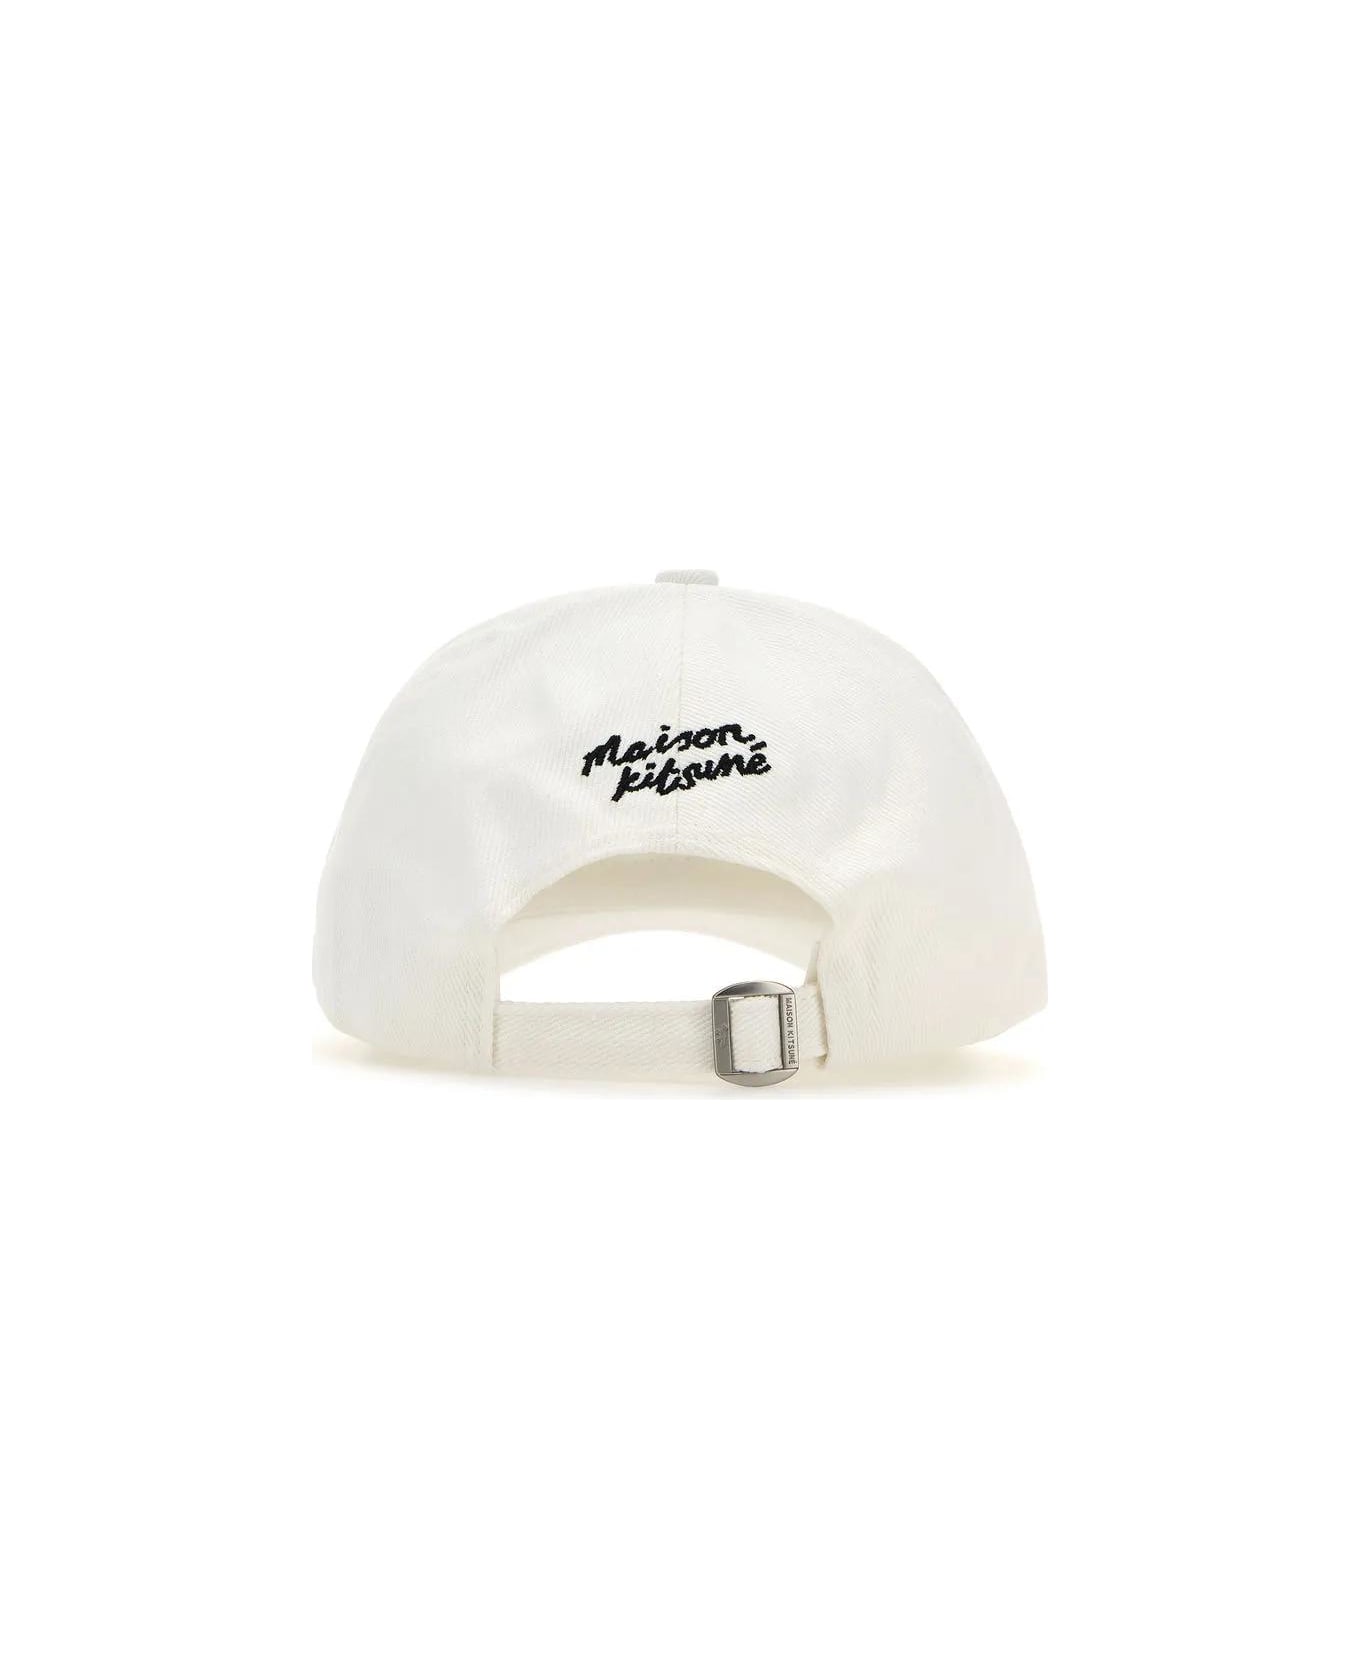 Maison Kitsuné White Cotton Baseball Cap - White 帽子